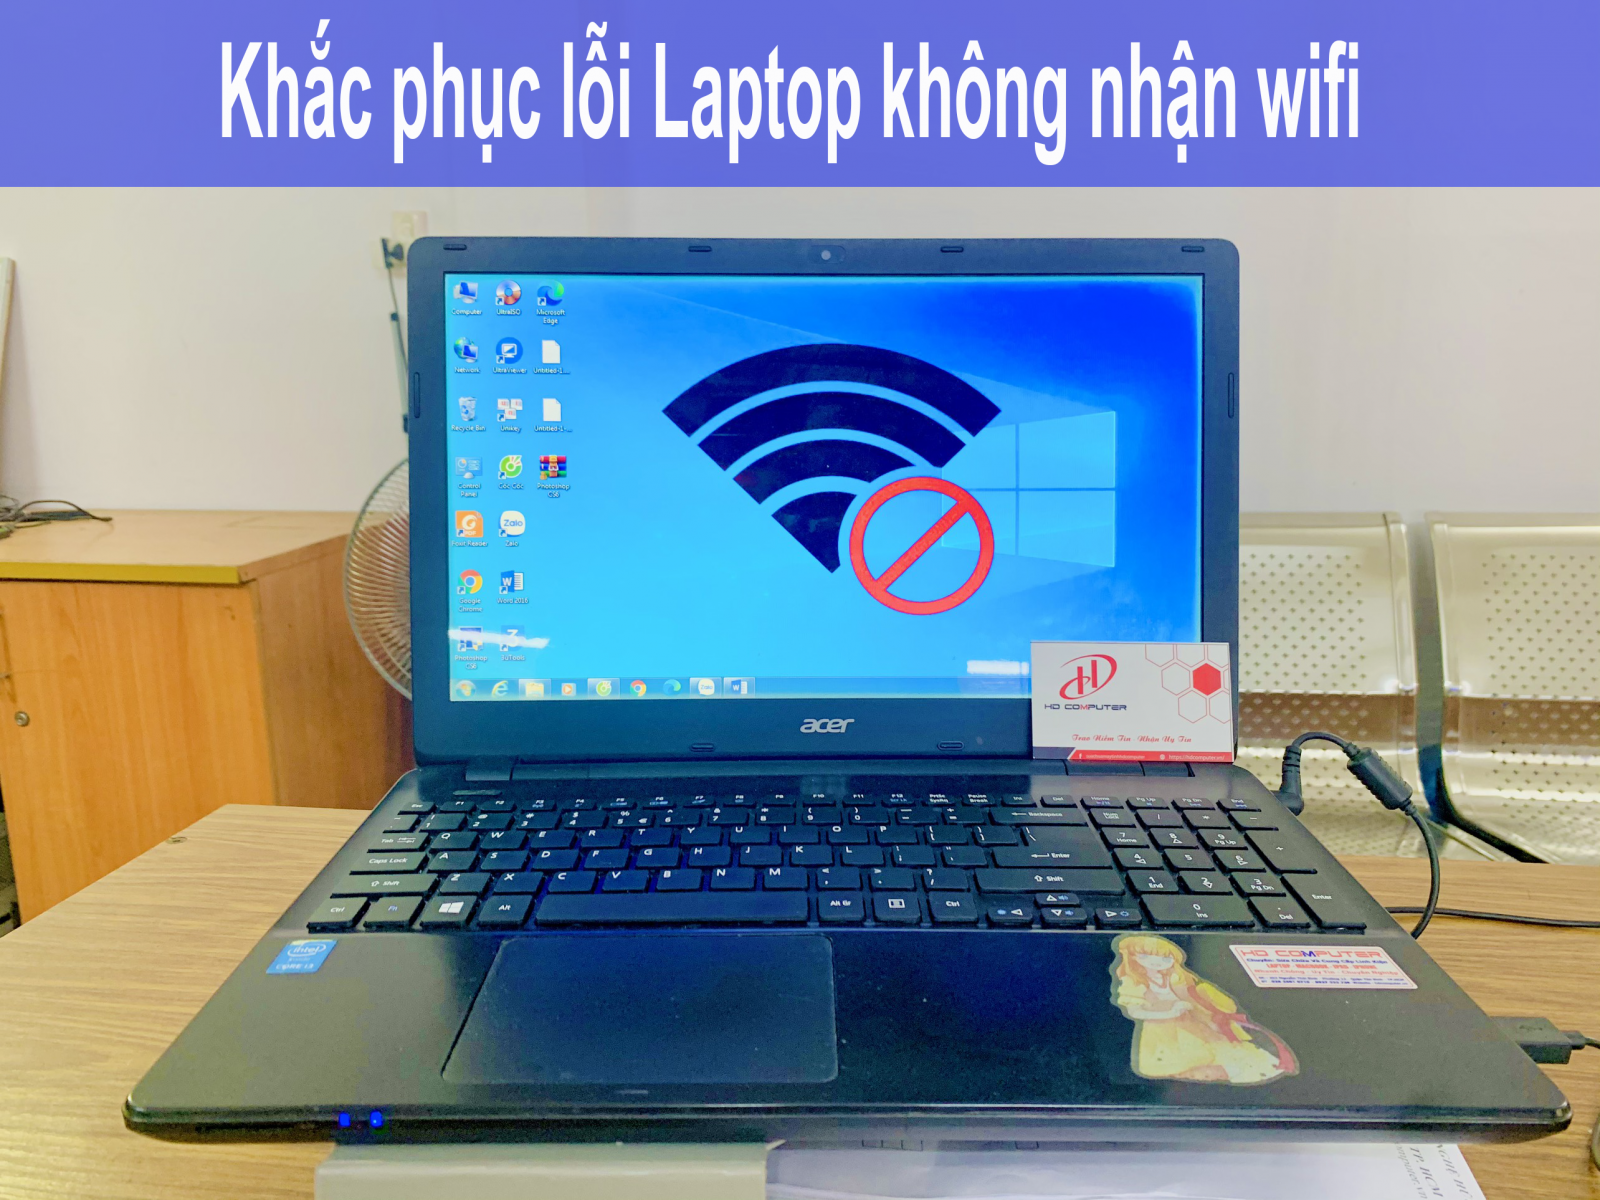 Khắc phục laptop không nhận wifi